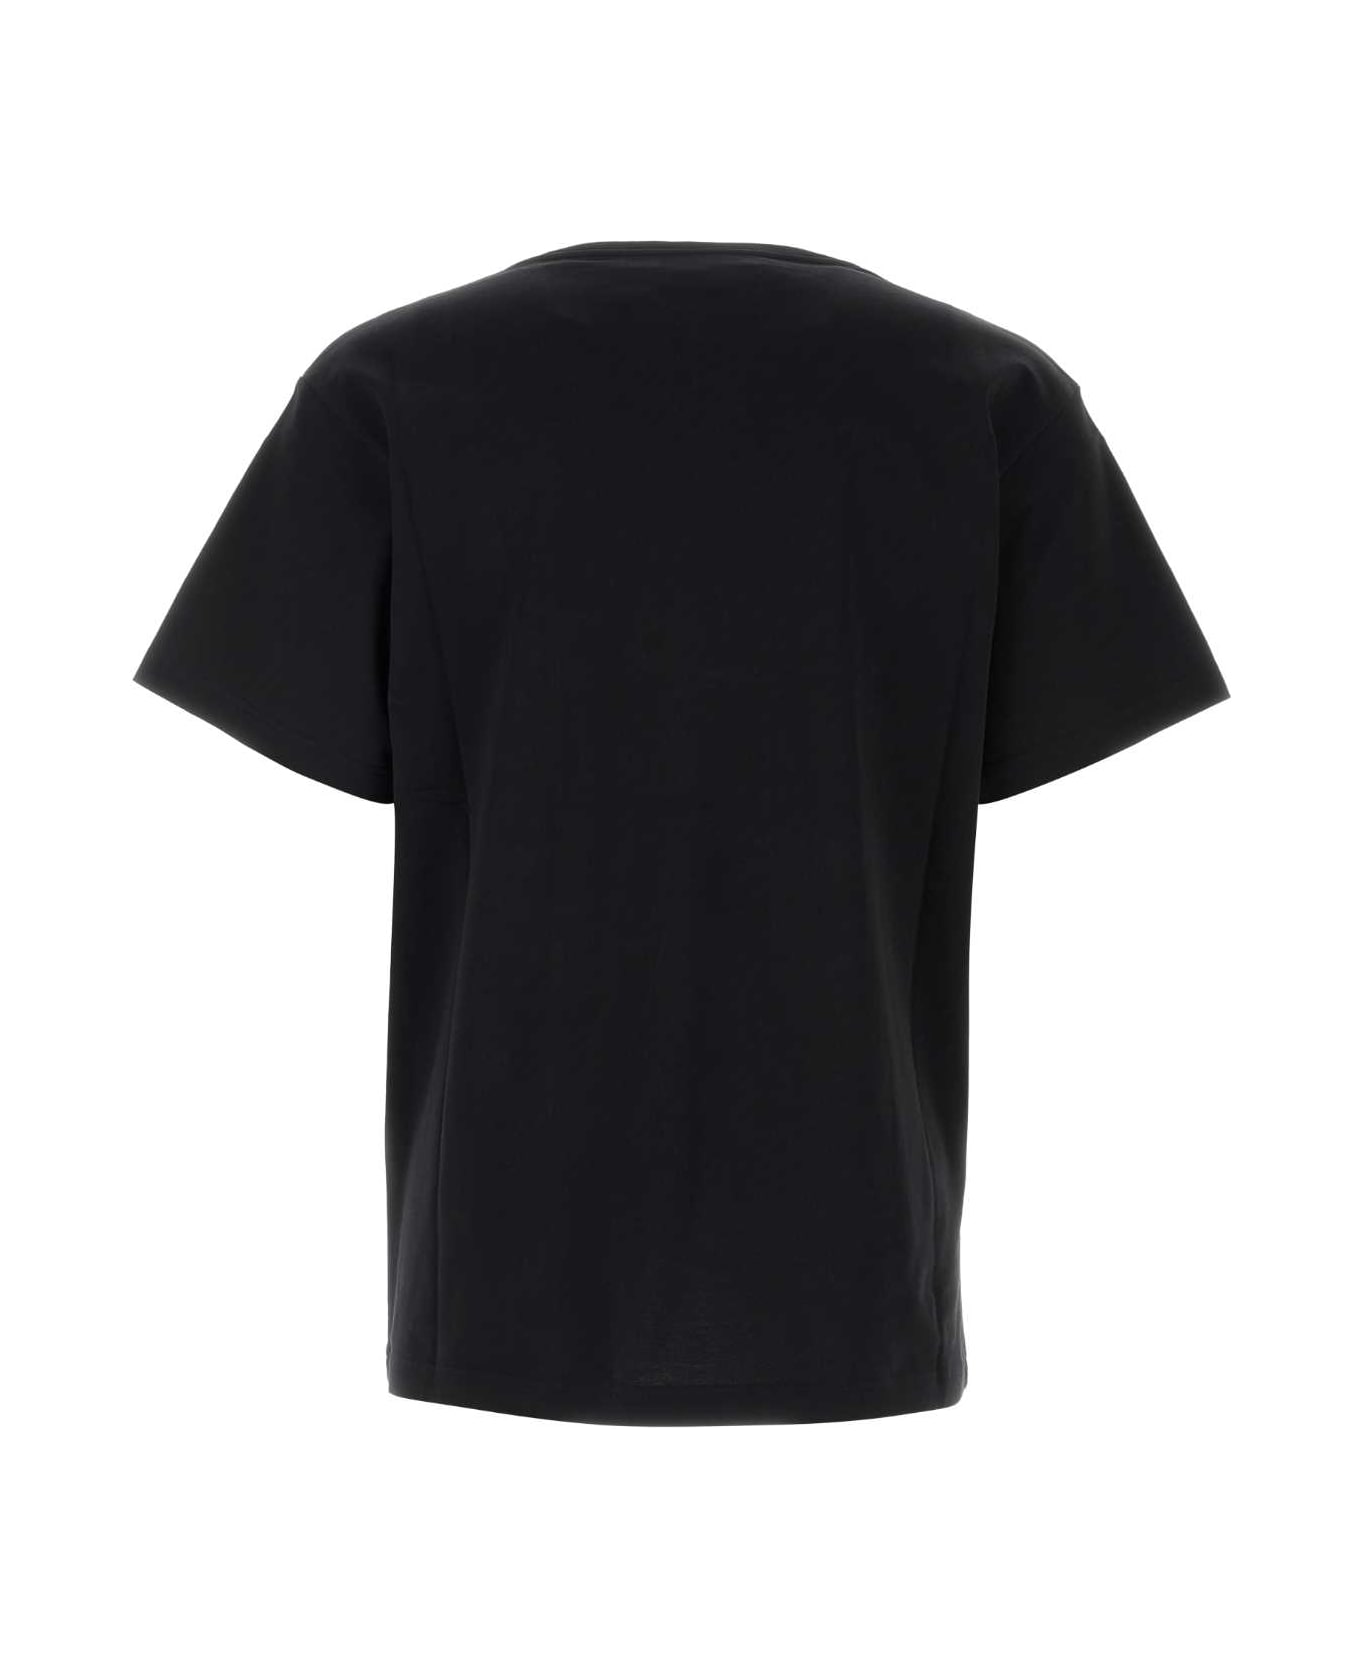 Y/Project Black Cotton T-shirt - BLACK シャツ